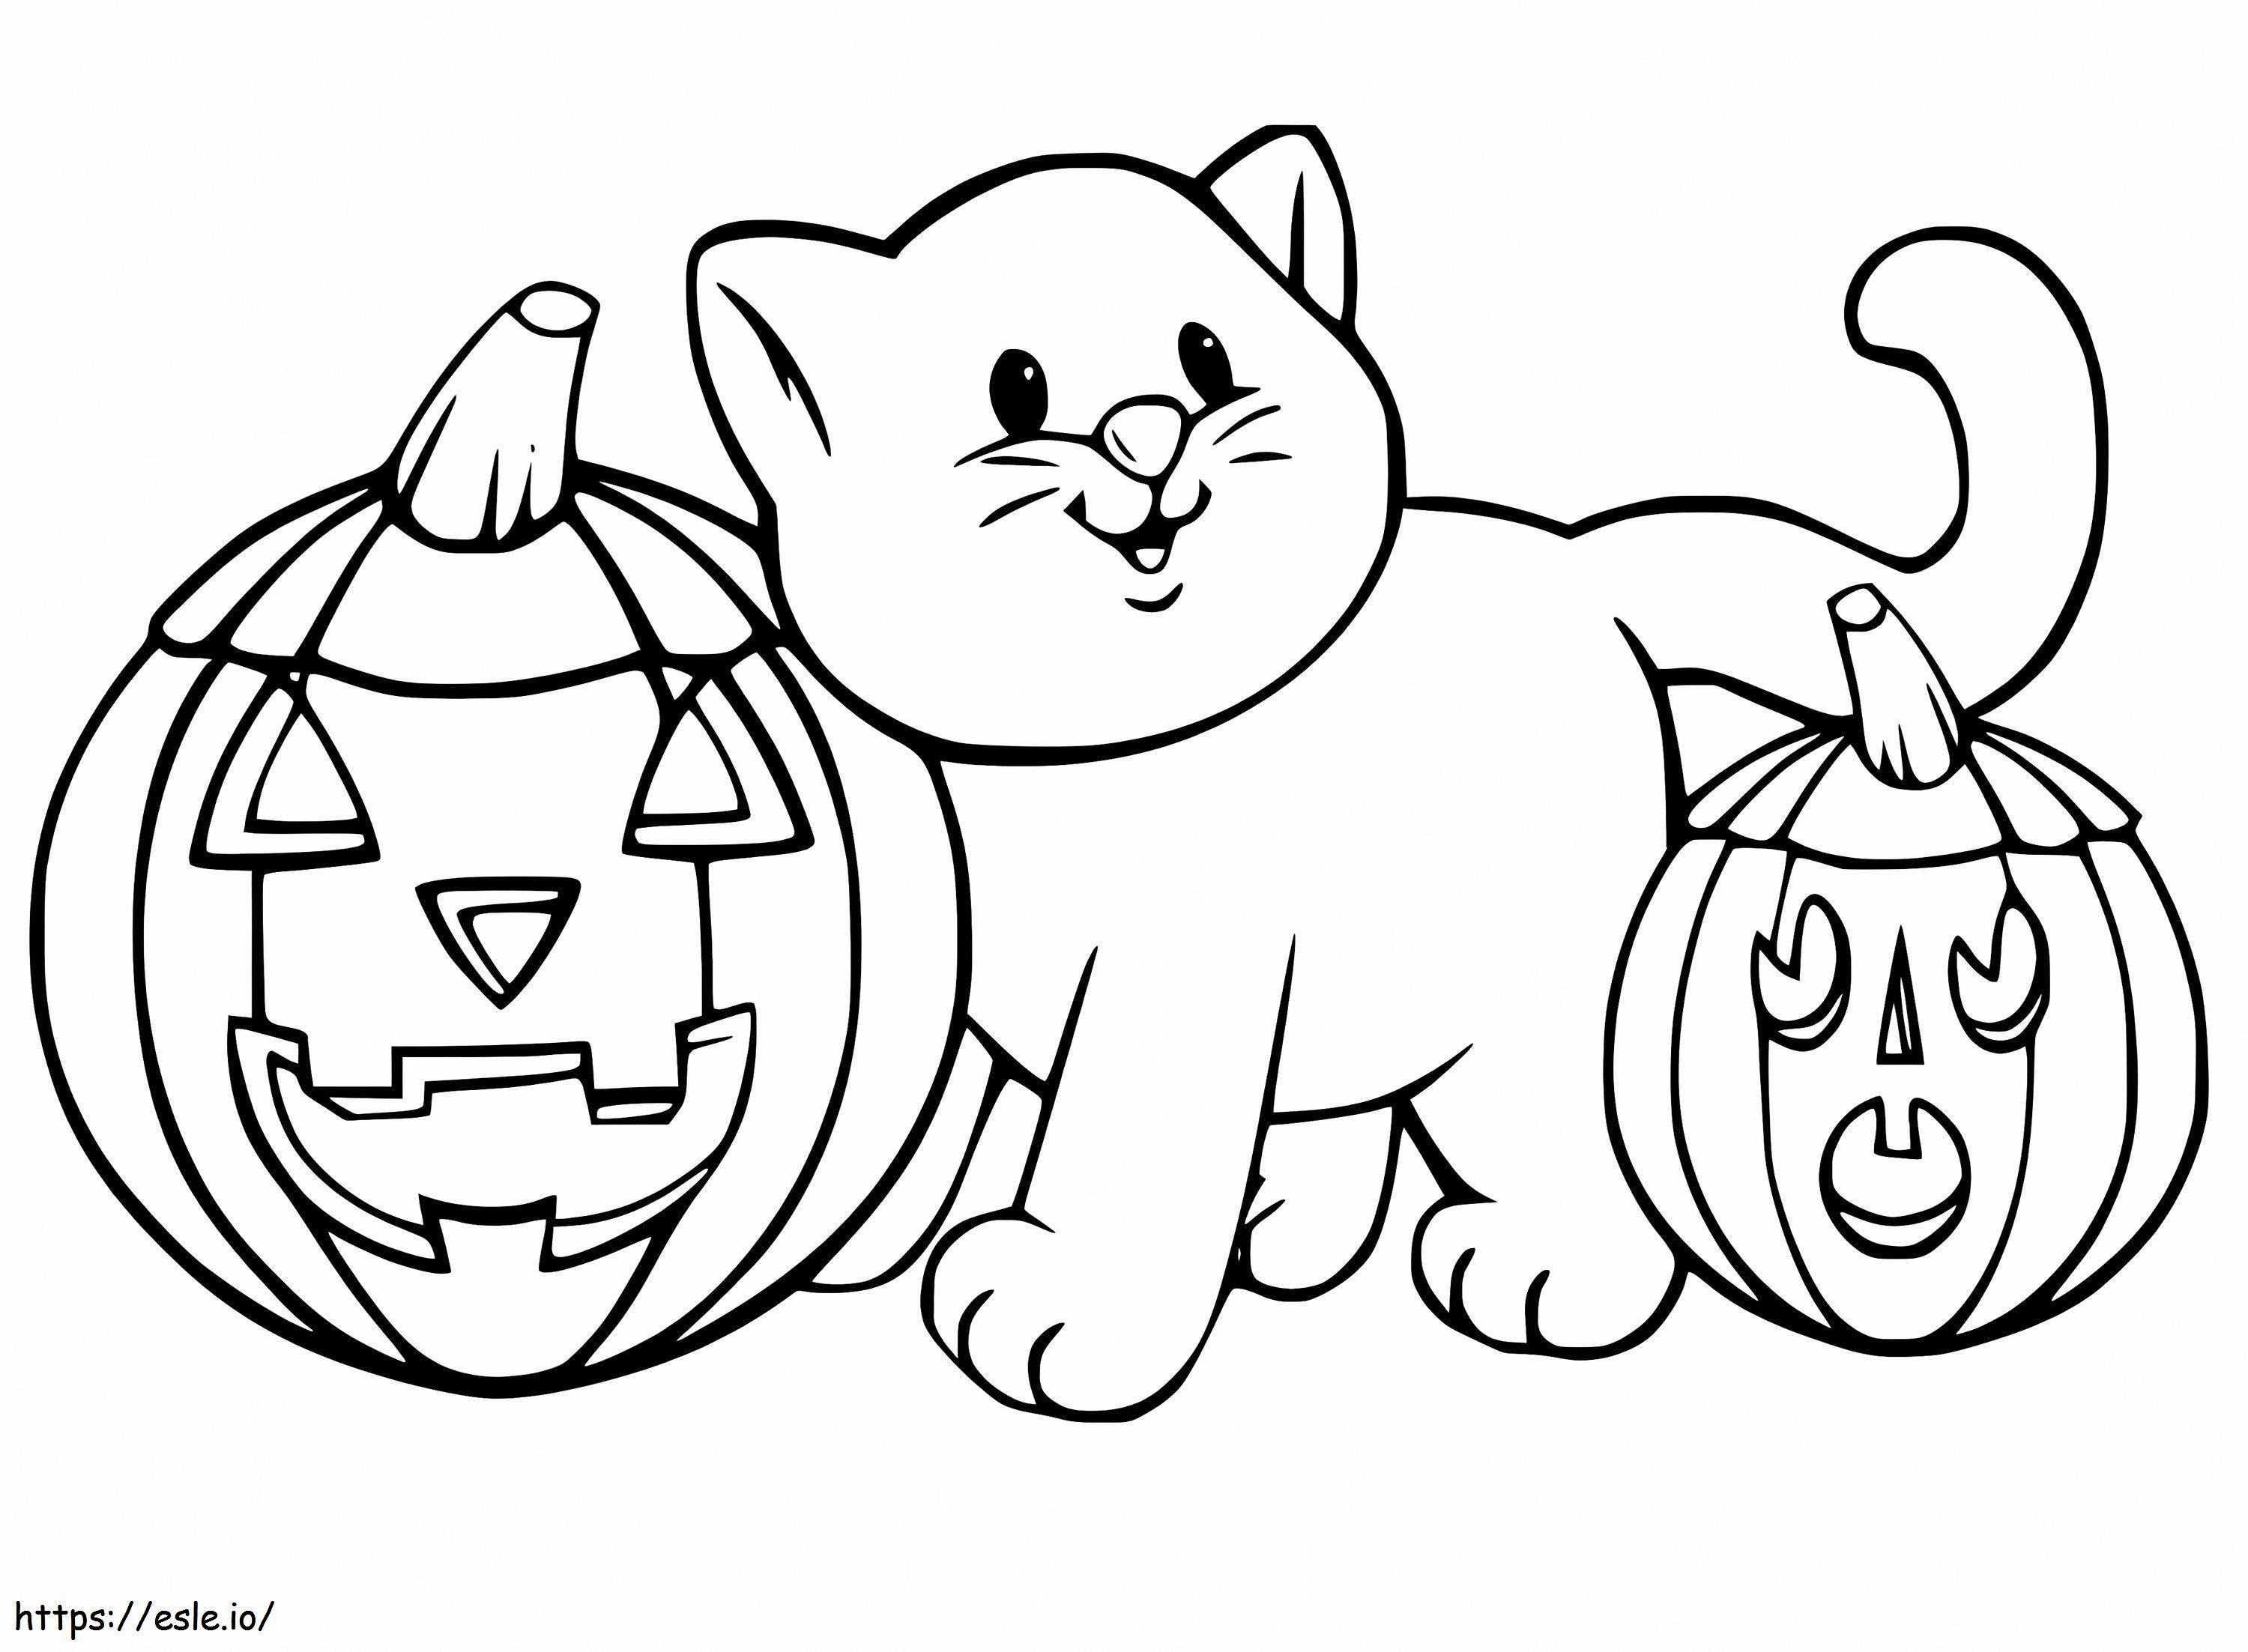 Halloweenowy Kot I Dynie kolorowanka